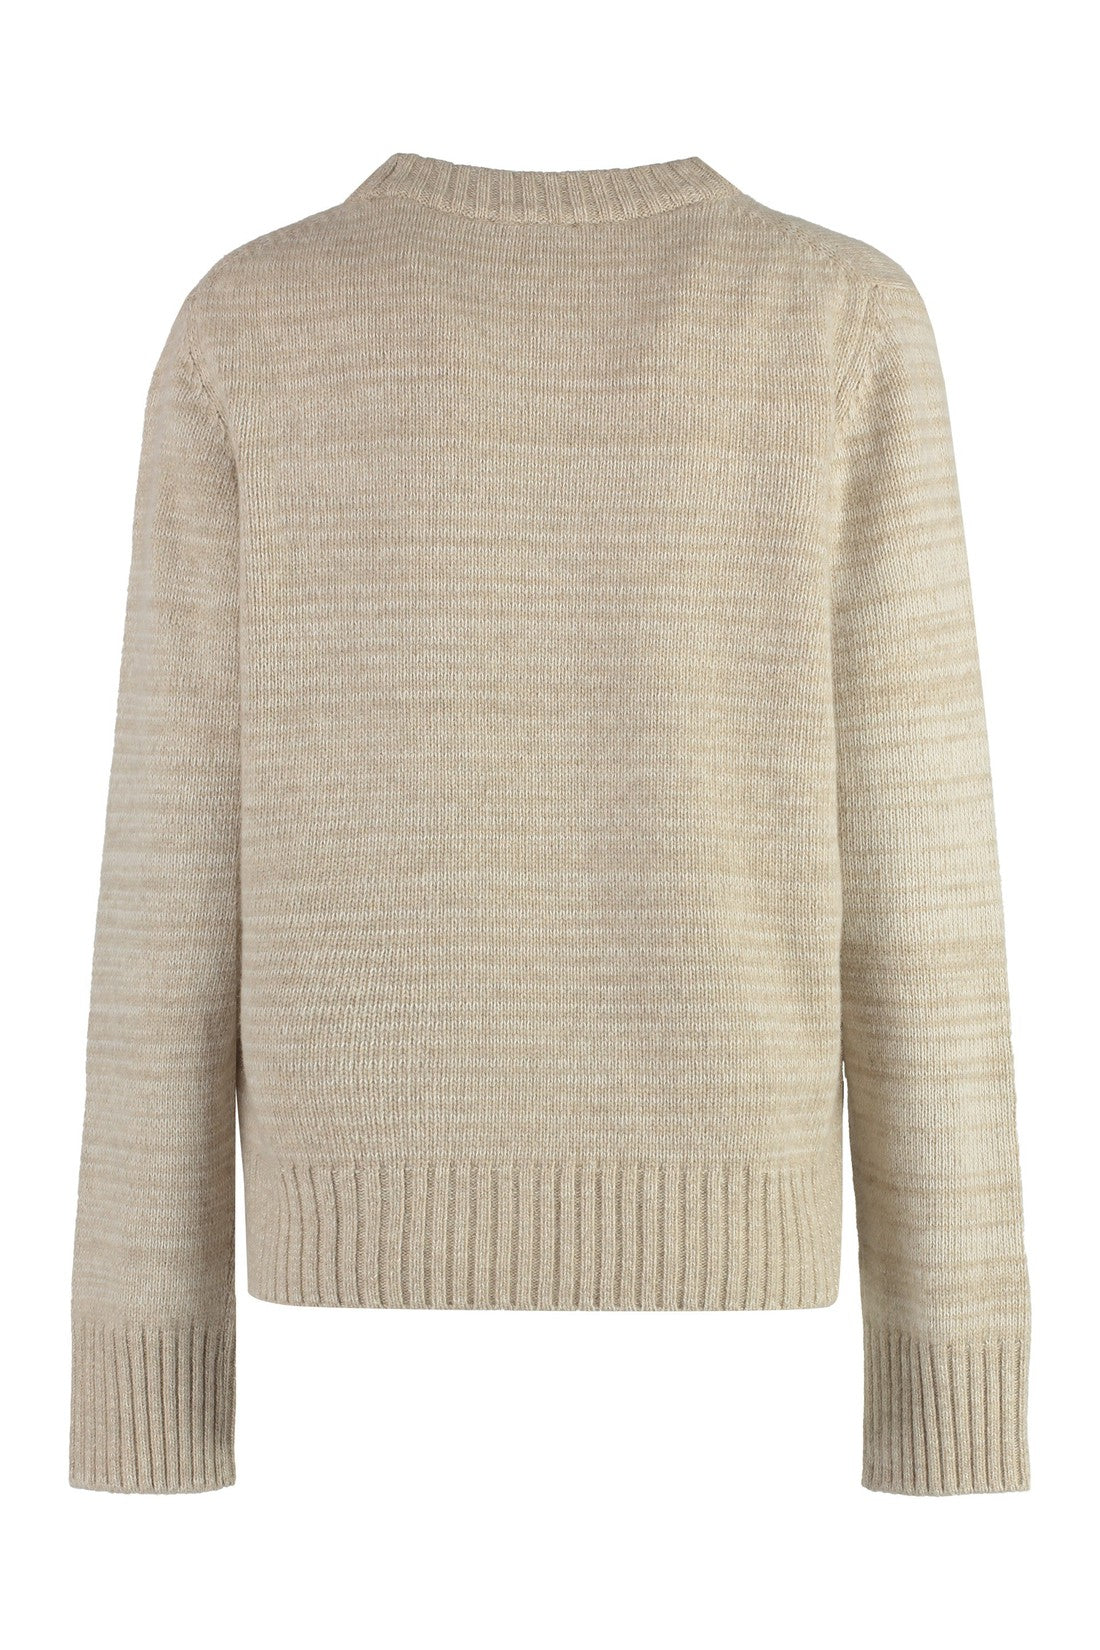 GANNI-OUTLET-SALE-Wool blend pullover-ARCHIVIST